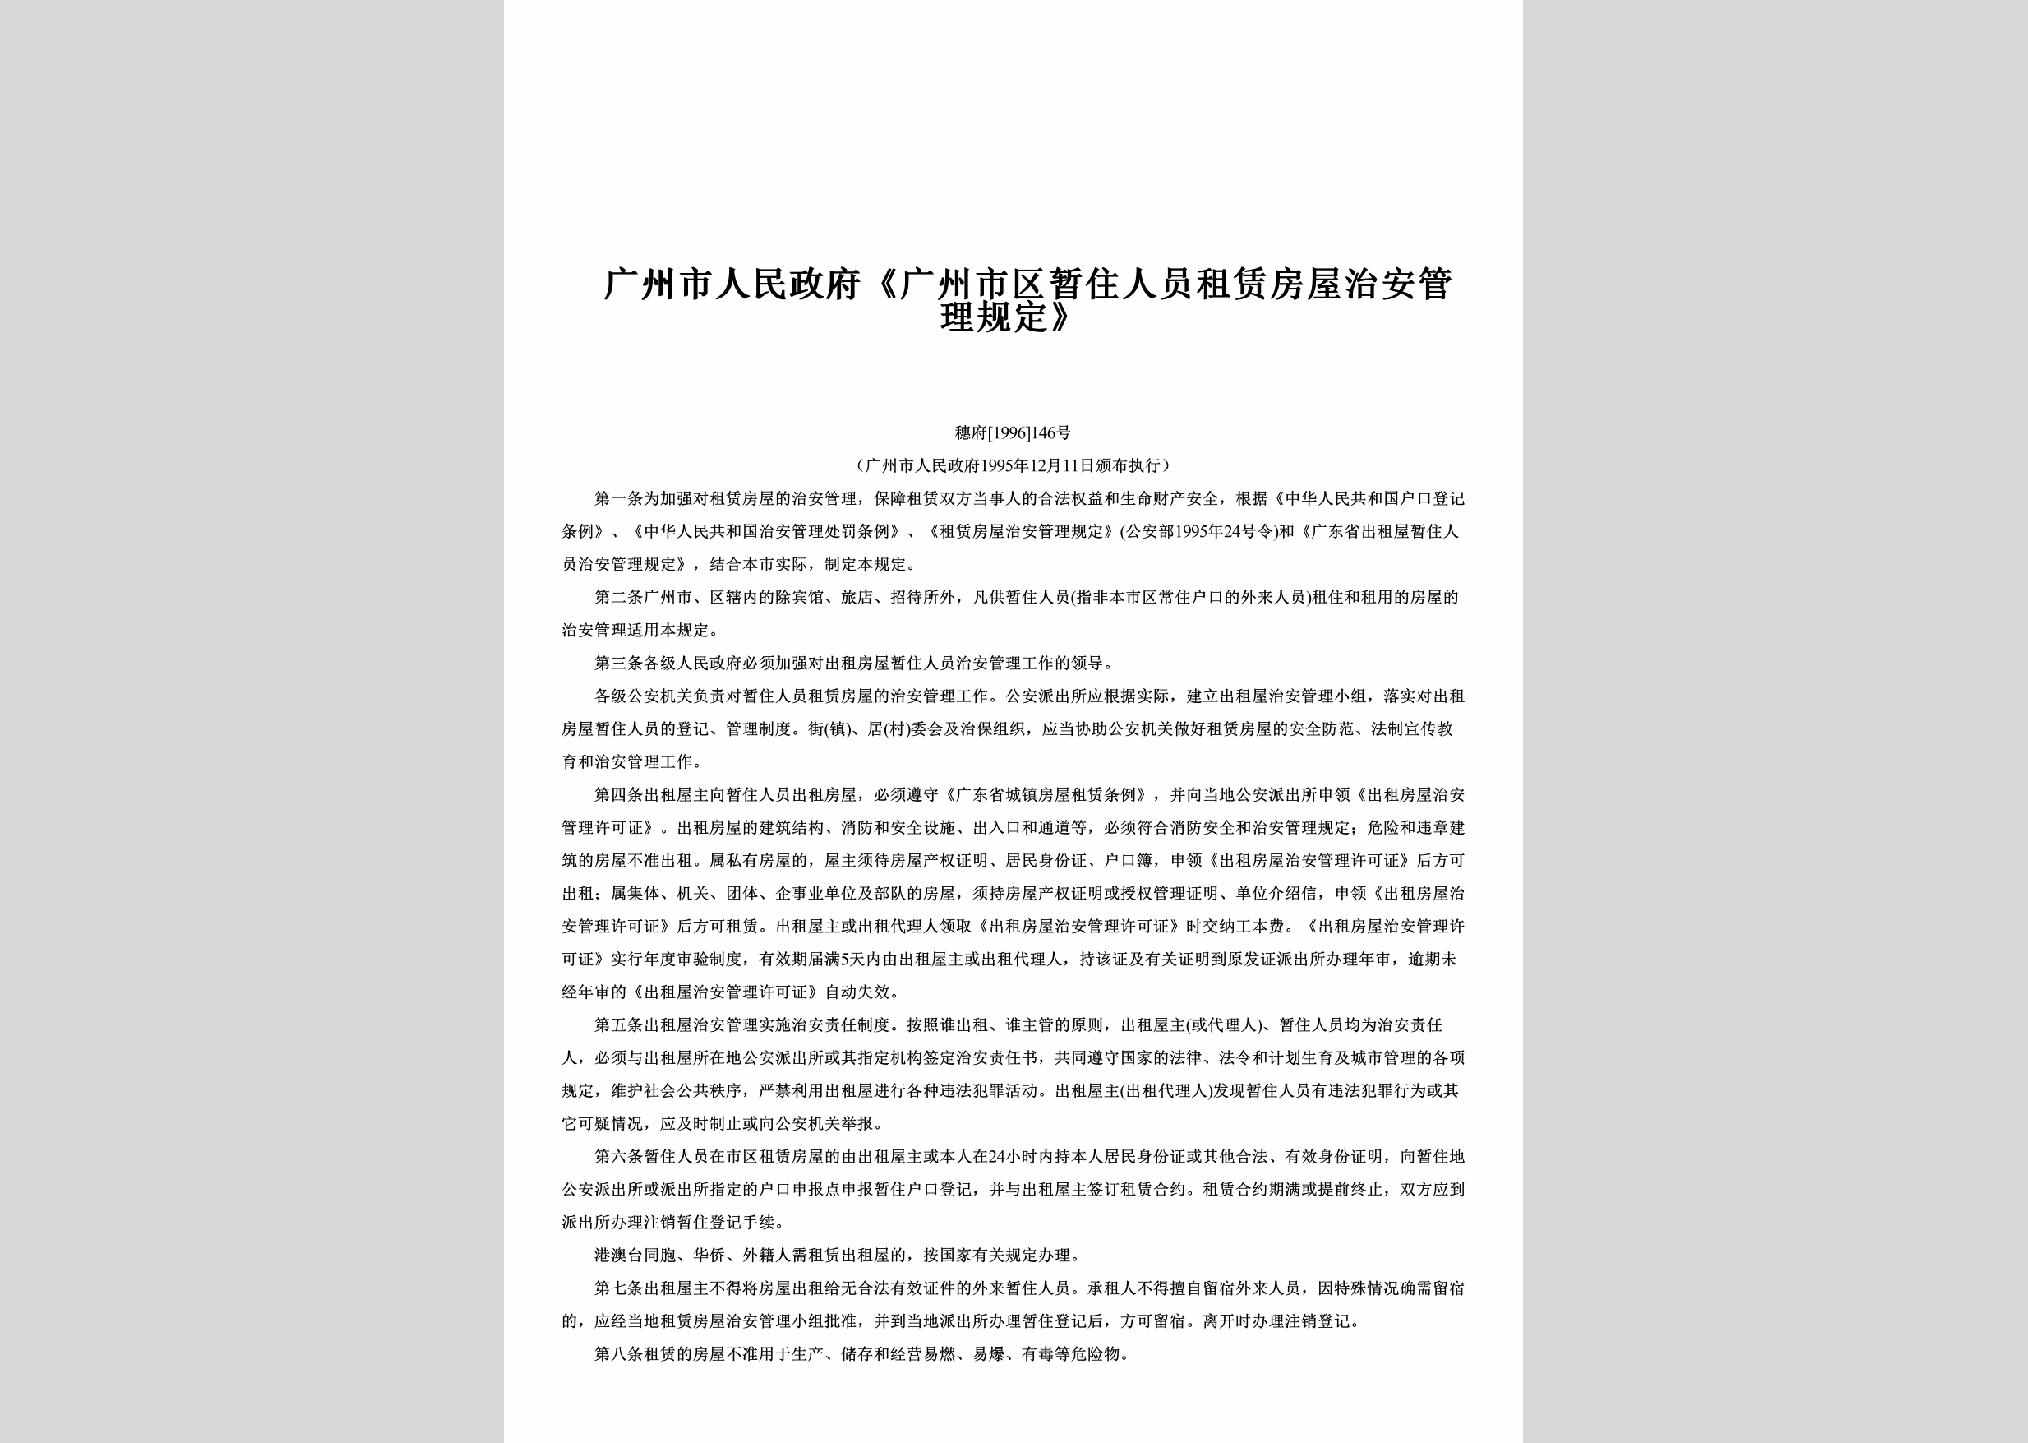 穗府[1996]146号：《广州市区暂住人员租赁房屋治安管理规定》